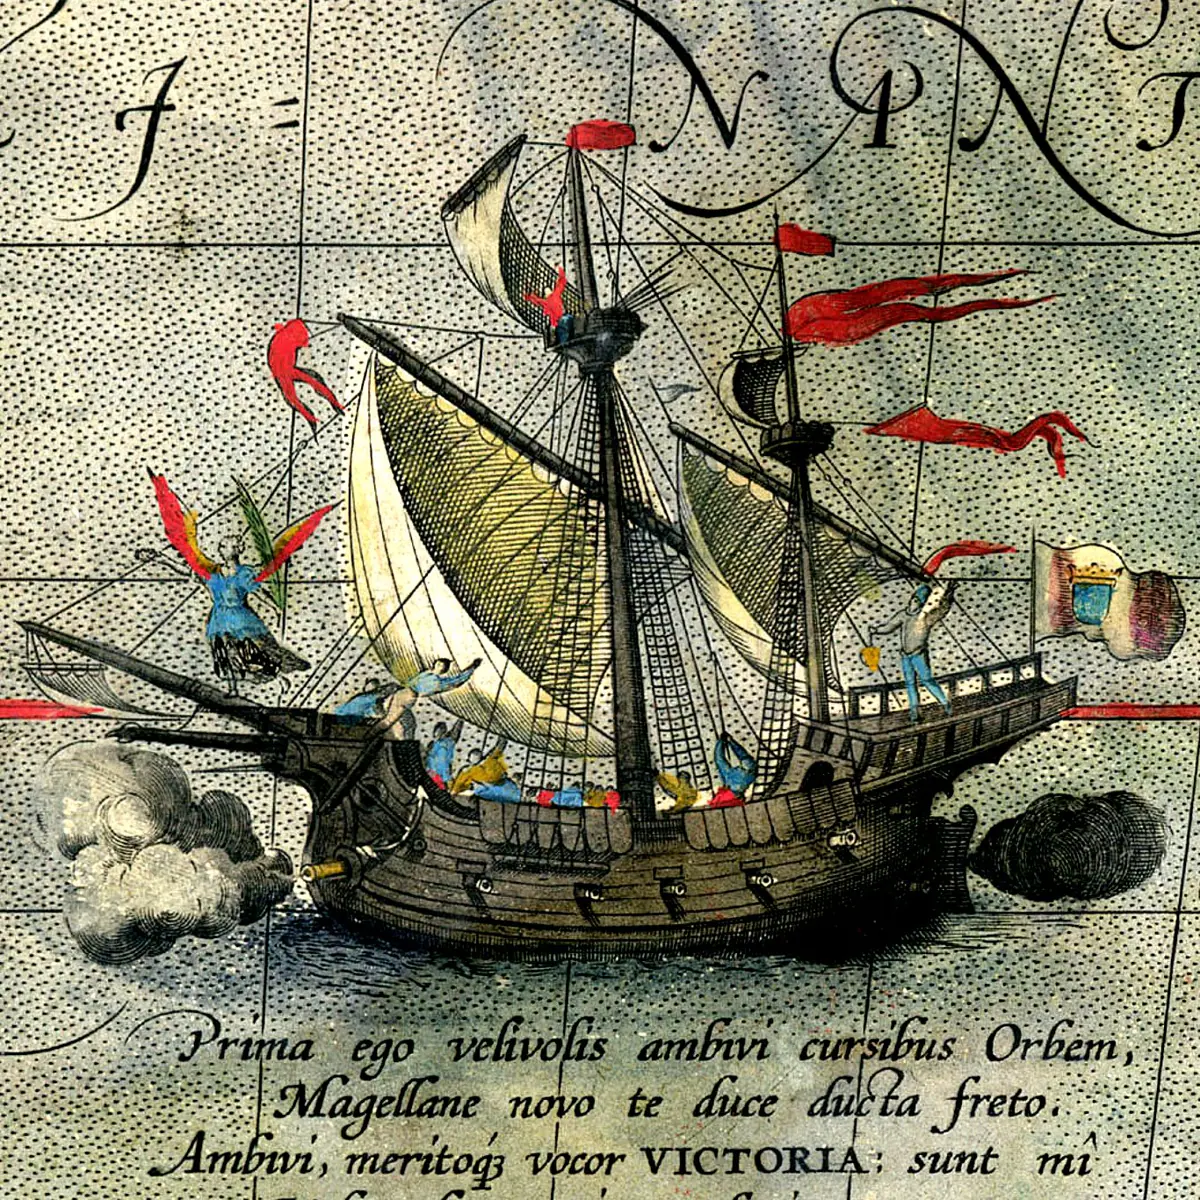 La nao Victoria, en un mapa del geógrafo y cartógrafo flamenco Abraham Ortelius (1527-2598)